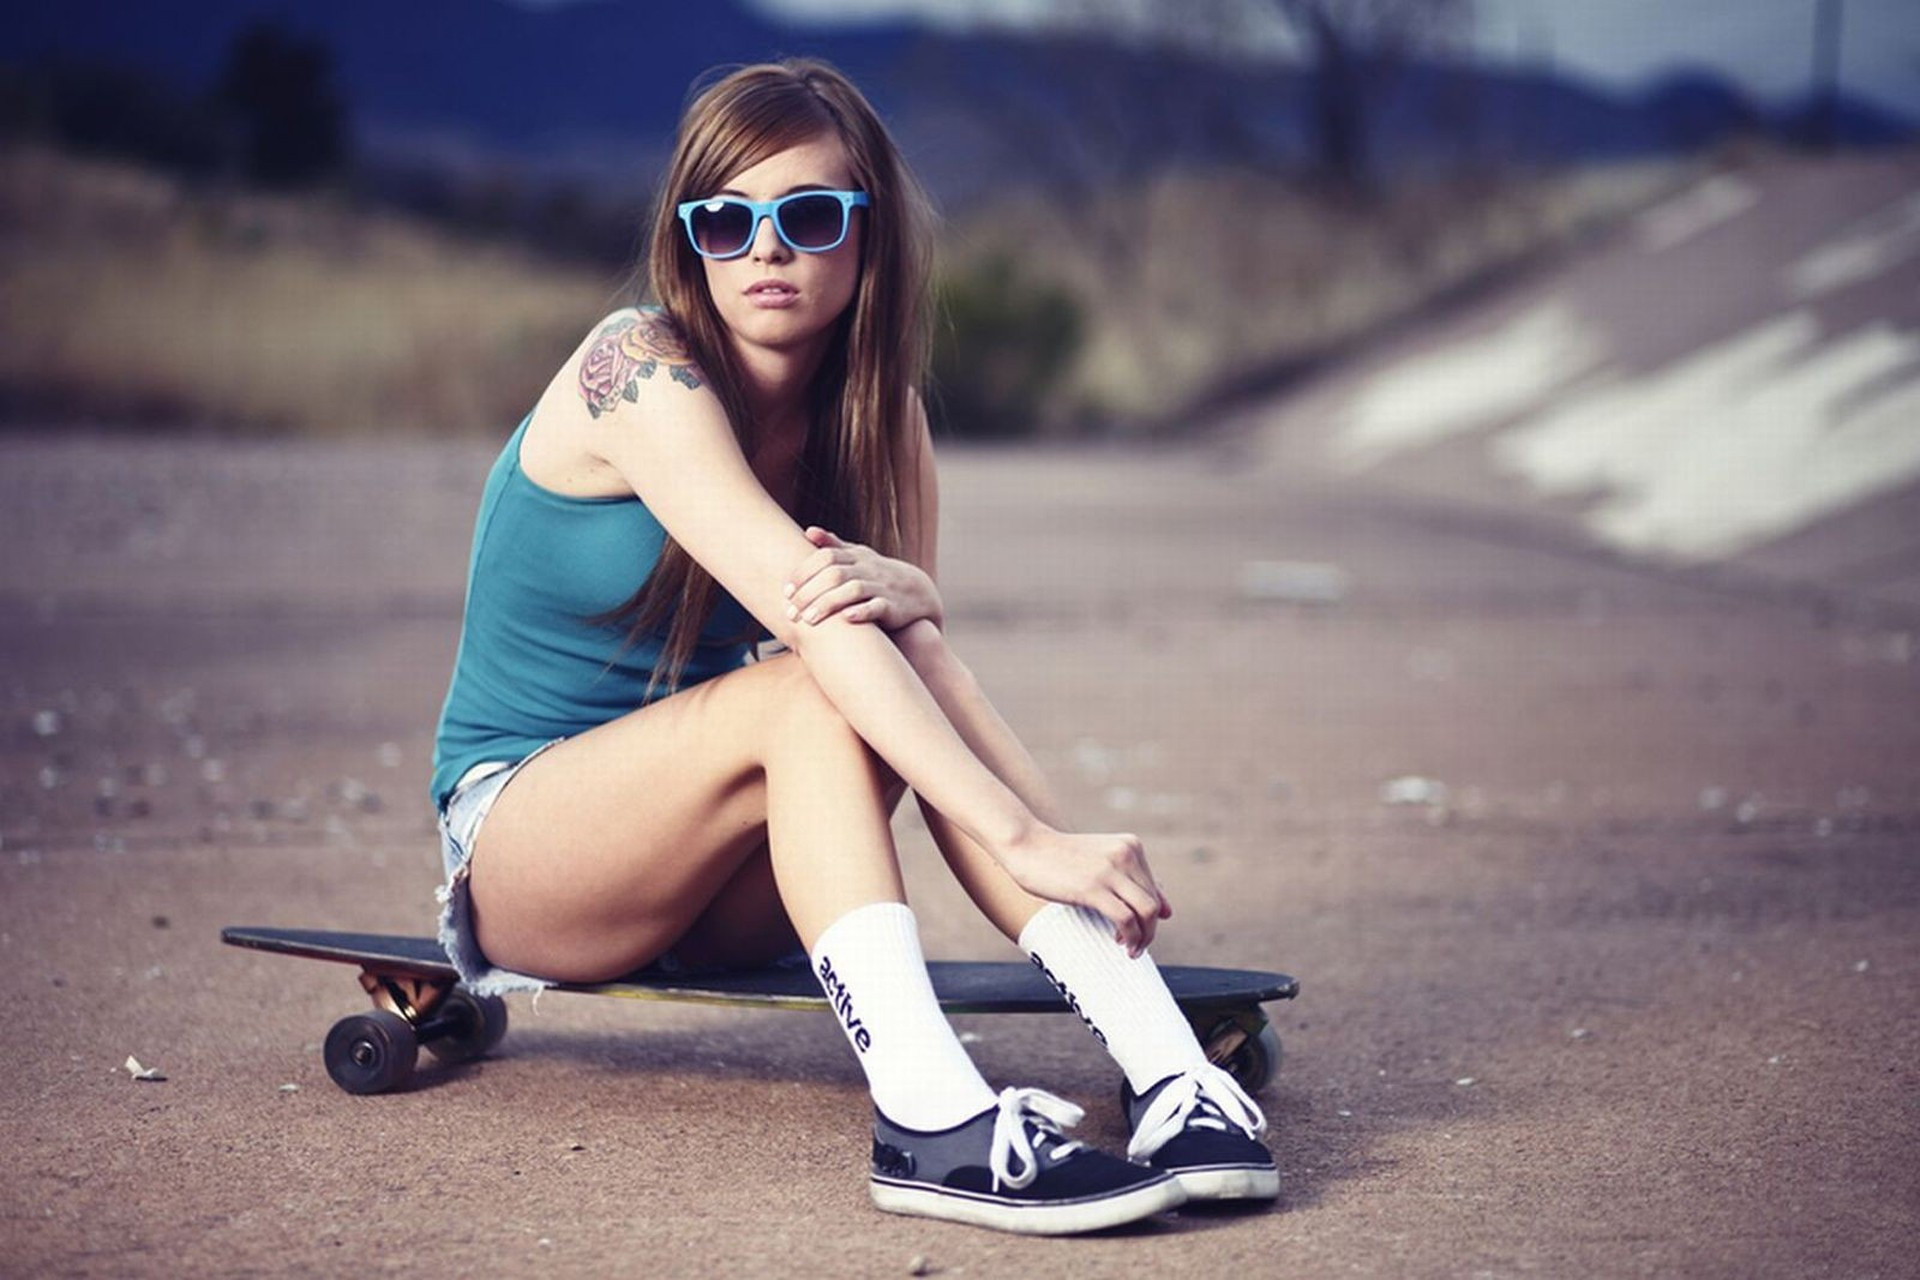 1920x1280 ... Girl With Skateboard Girl Girls Skateboarding Image Awesome Girls  Skateboarding Photo ...